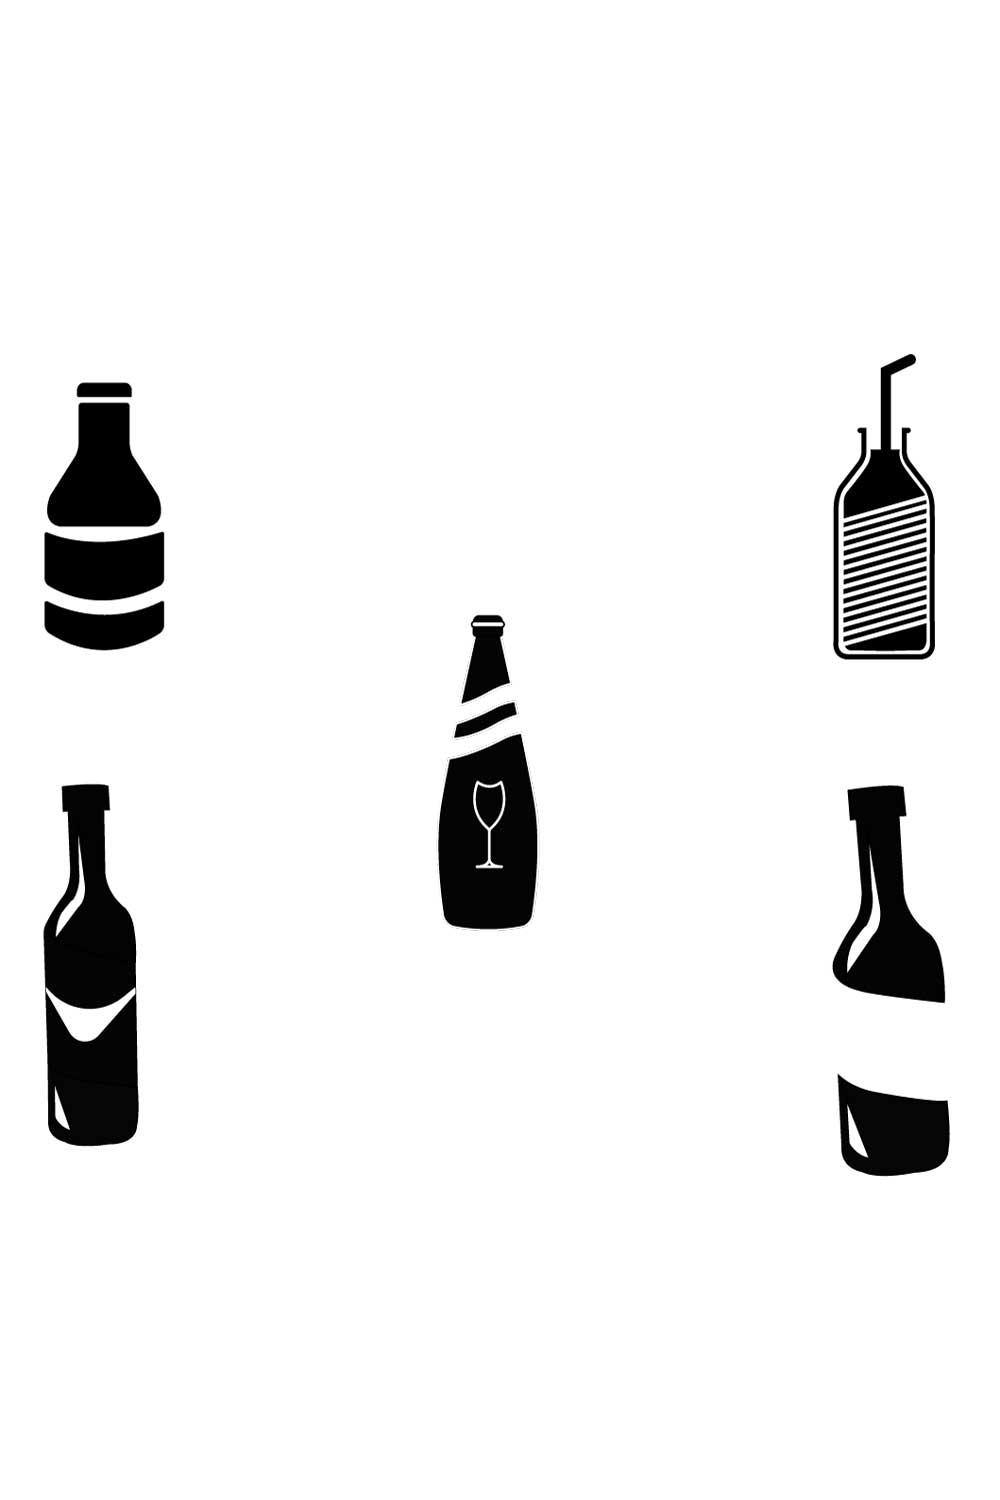 5 Bottle Icons Bundle pinterest image.